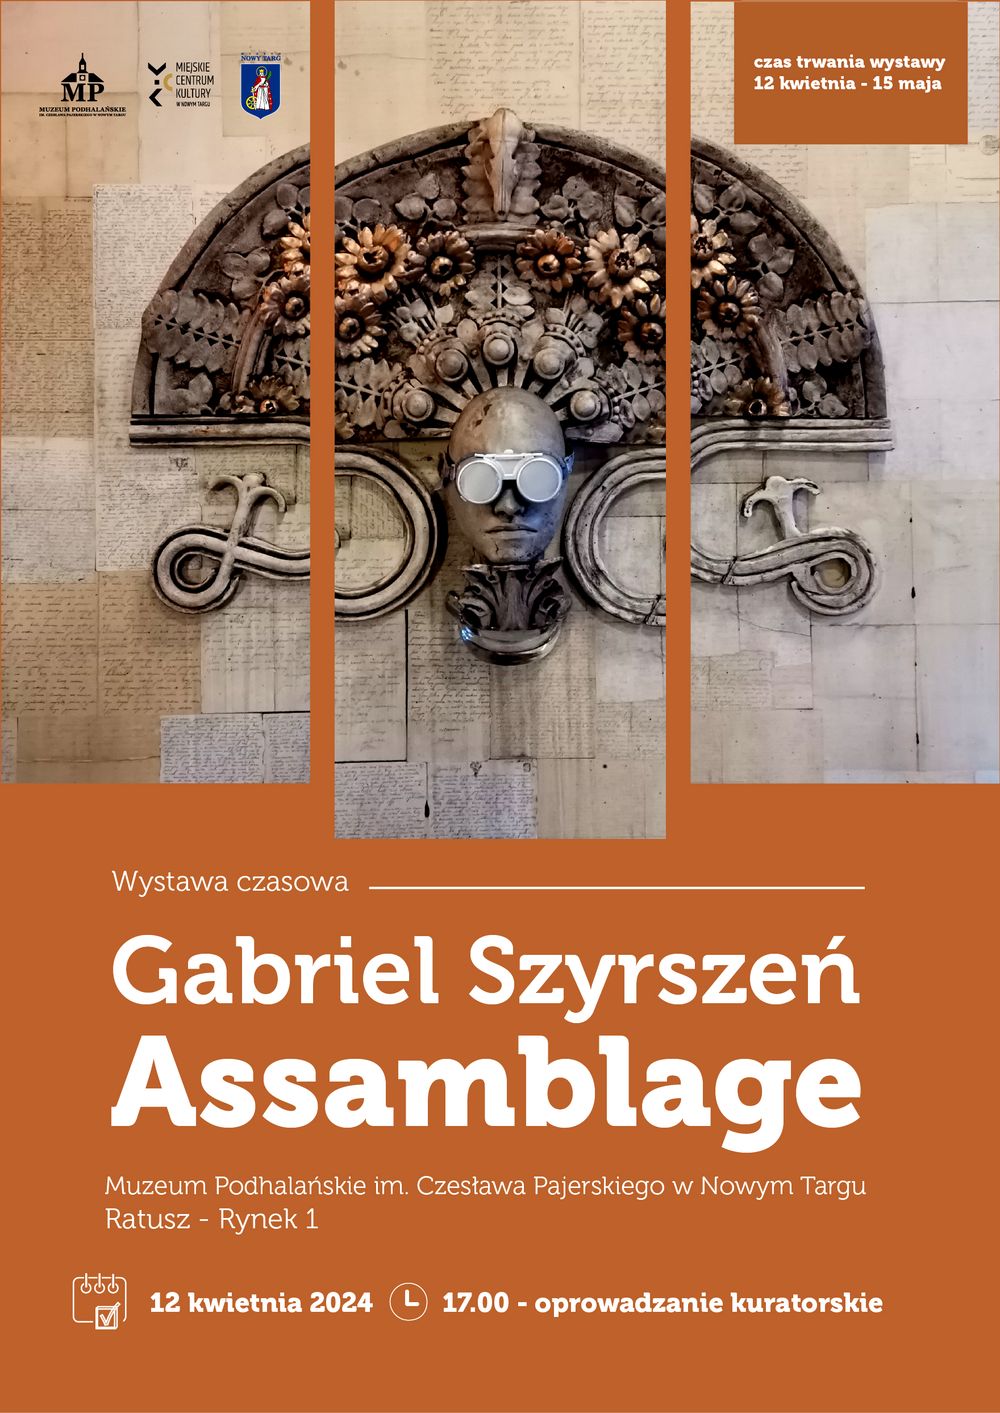 12 kwietnia – 15 maja. Wystawa czasowa „Asamblaże” Gabriela Szyrszenia